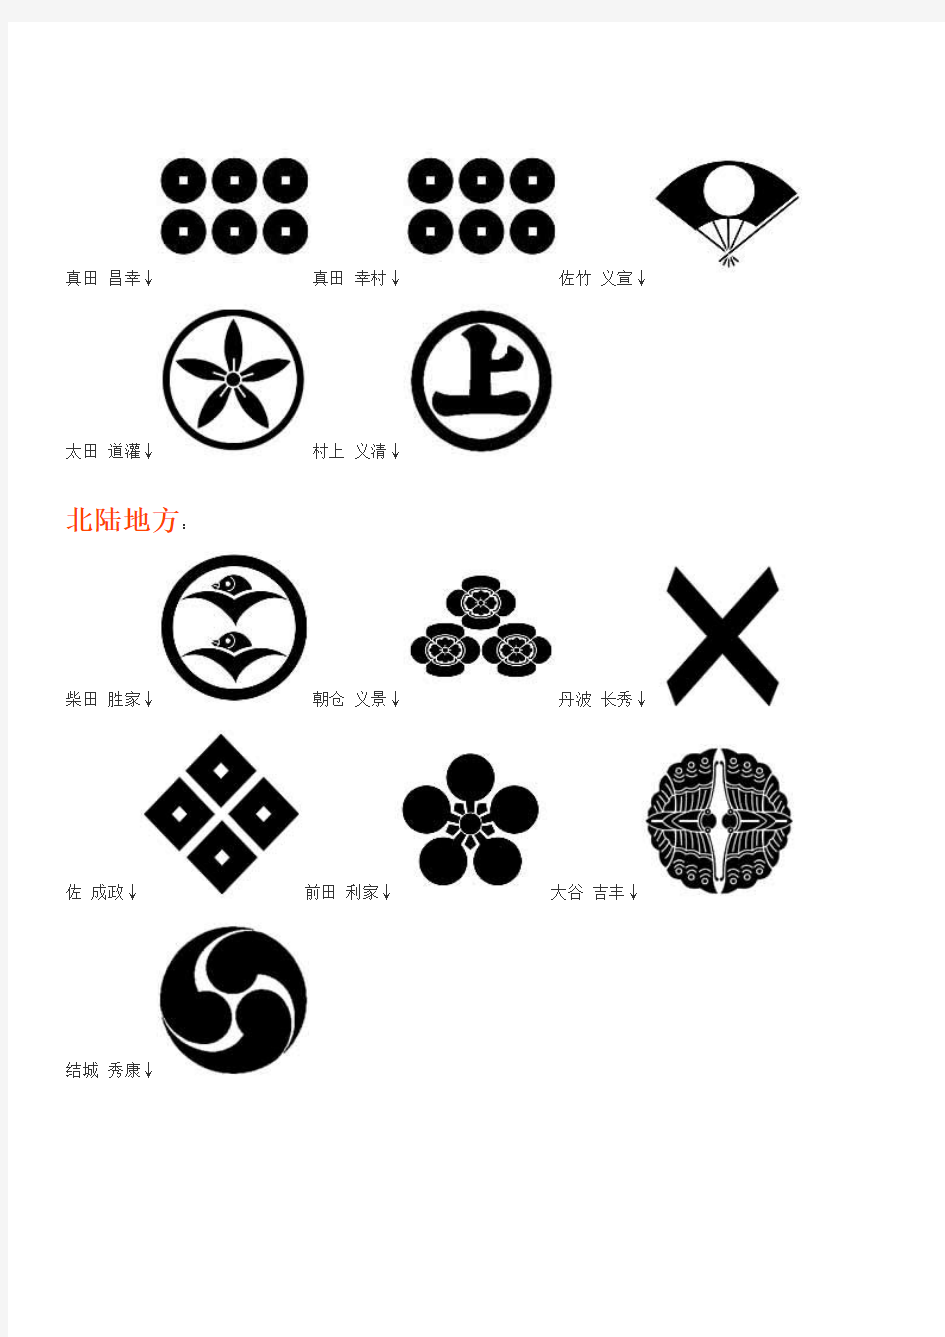 日本战国时代家徽修改版(转自 CJK_HAINAN )